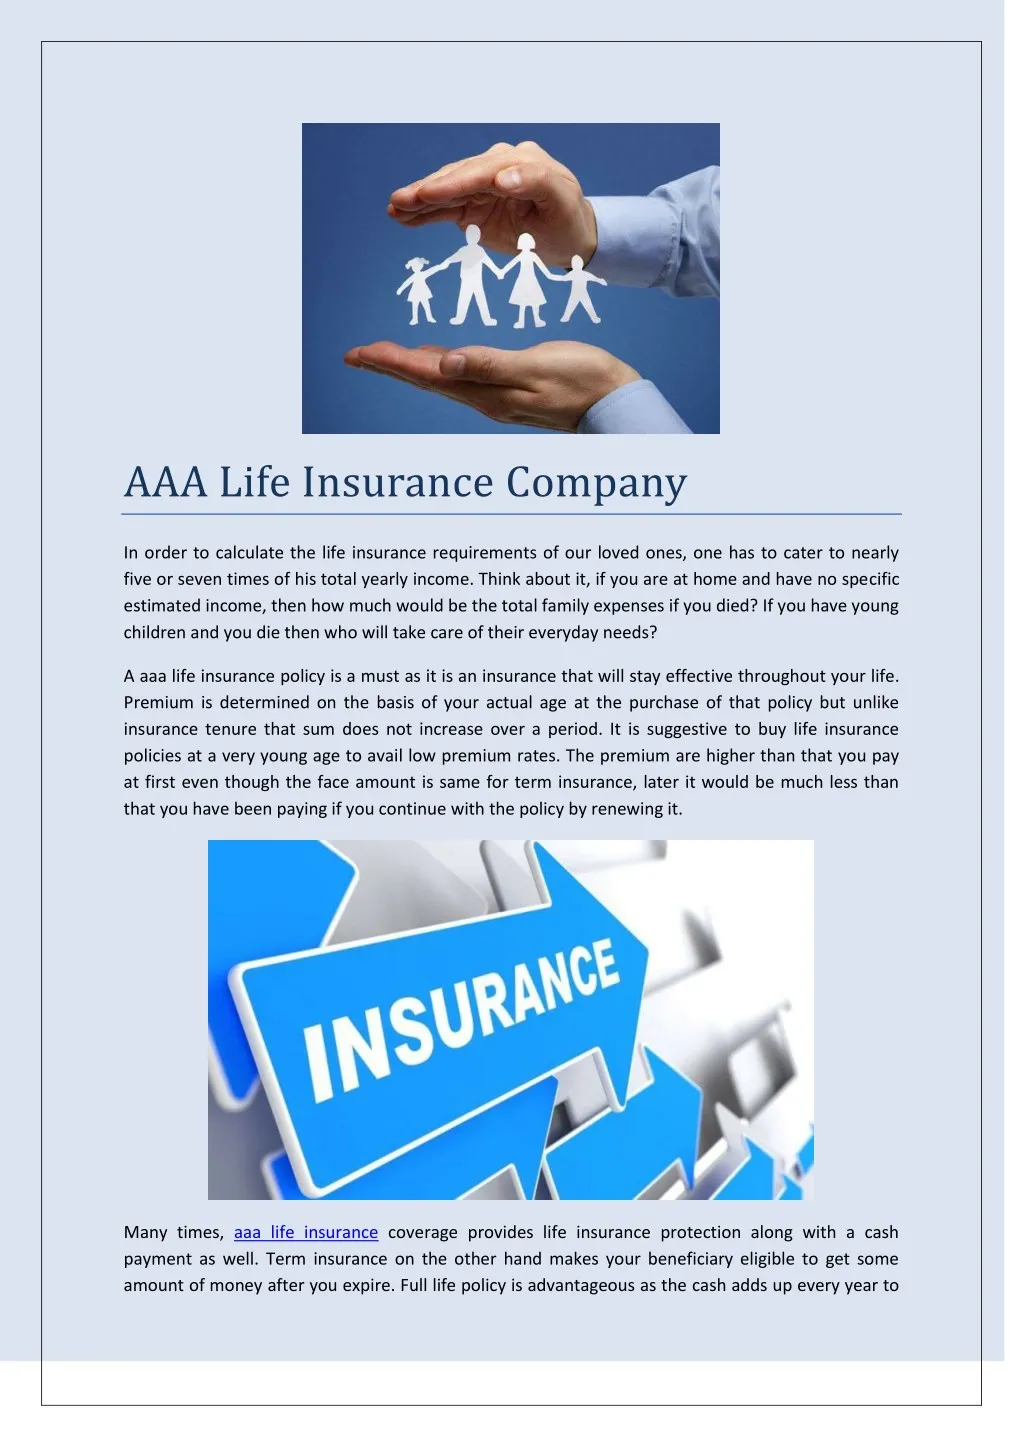 aaa life insurance company